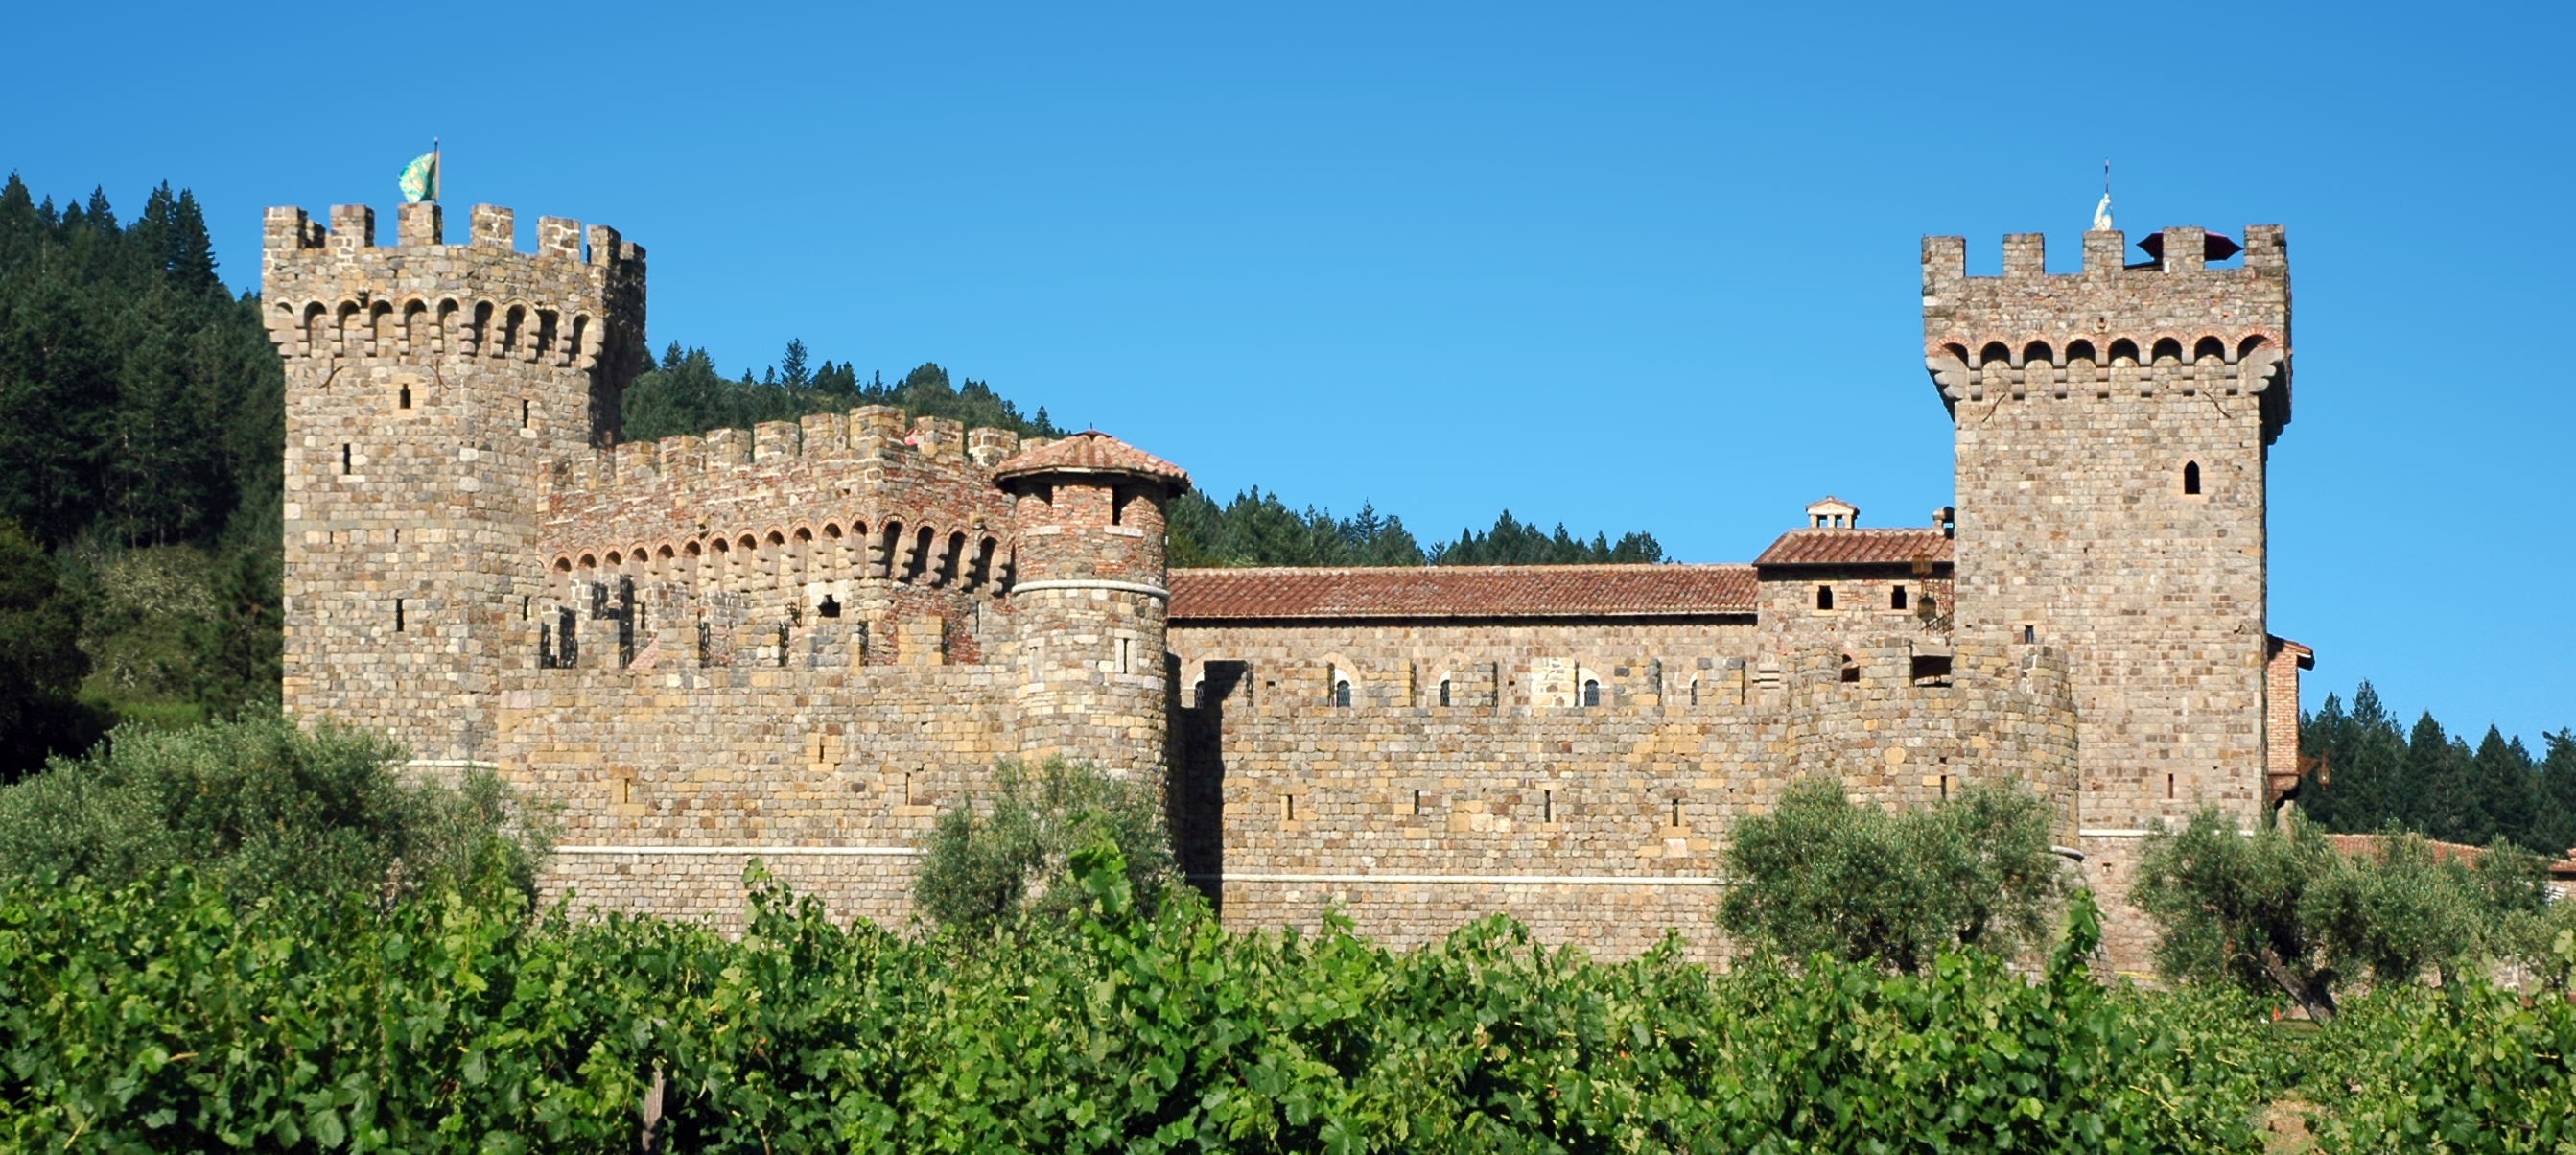 Castello_di_Amorosa | Group Tours